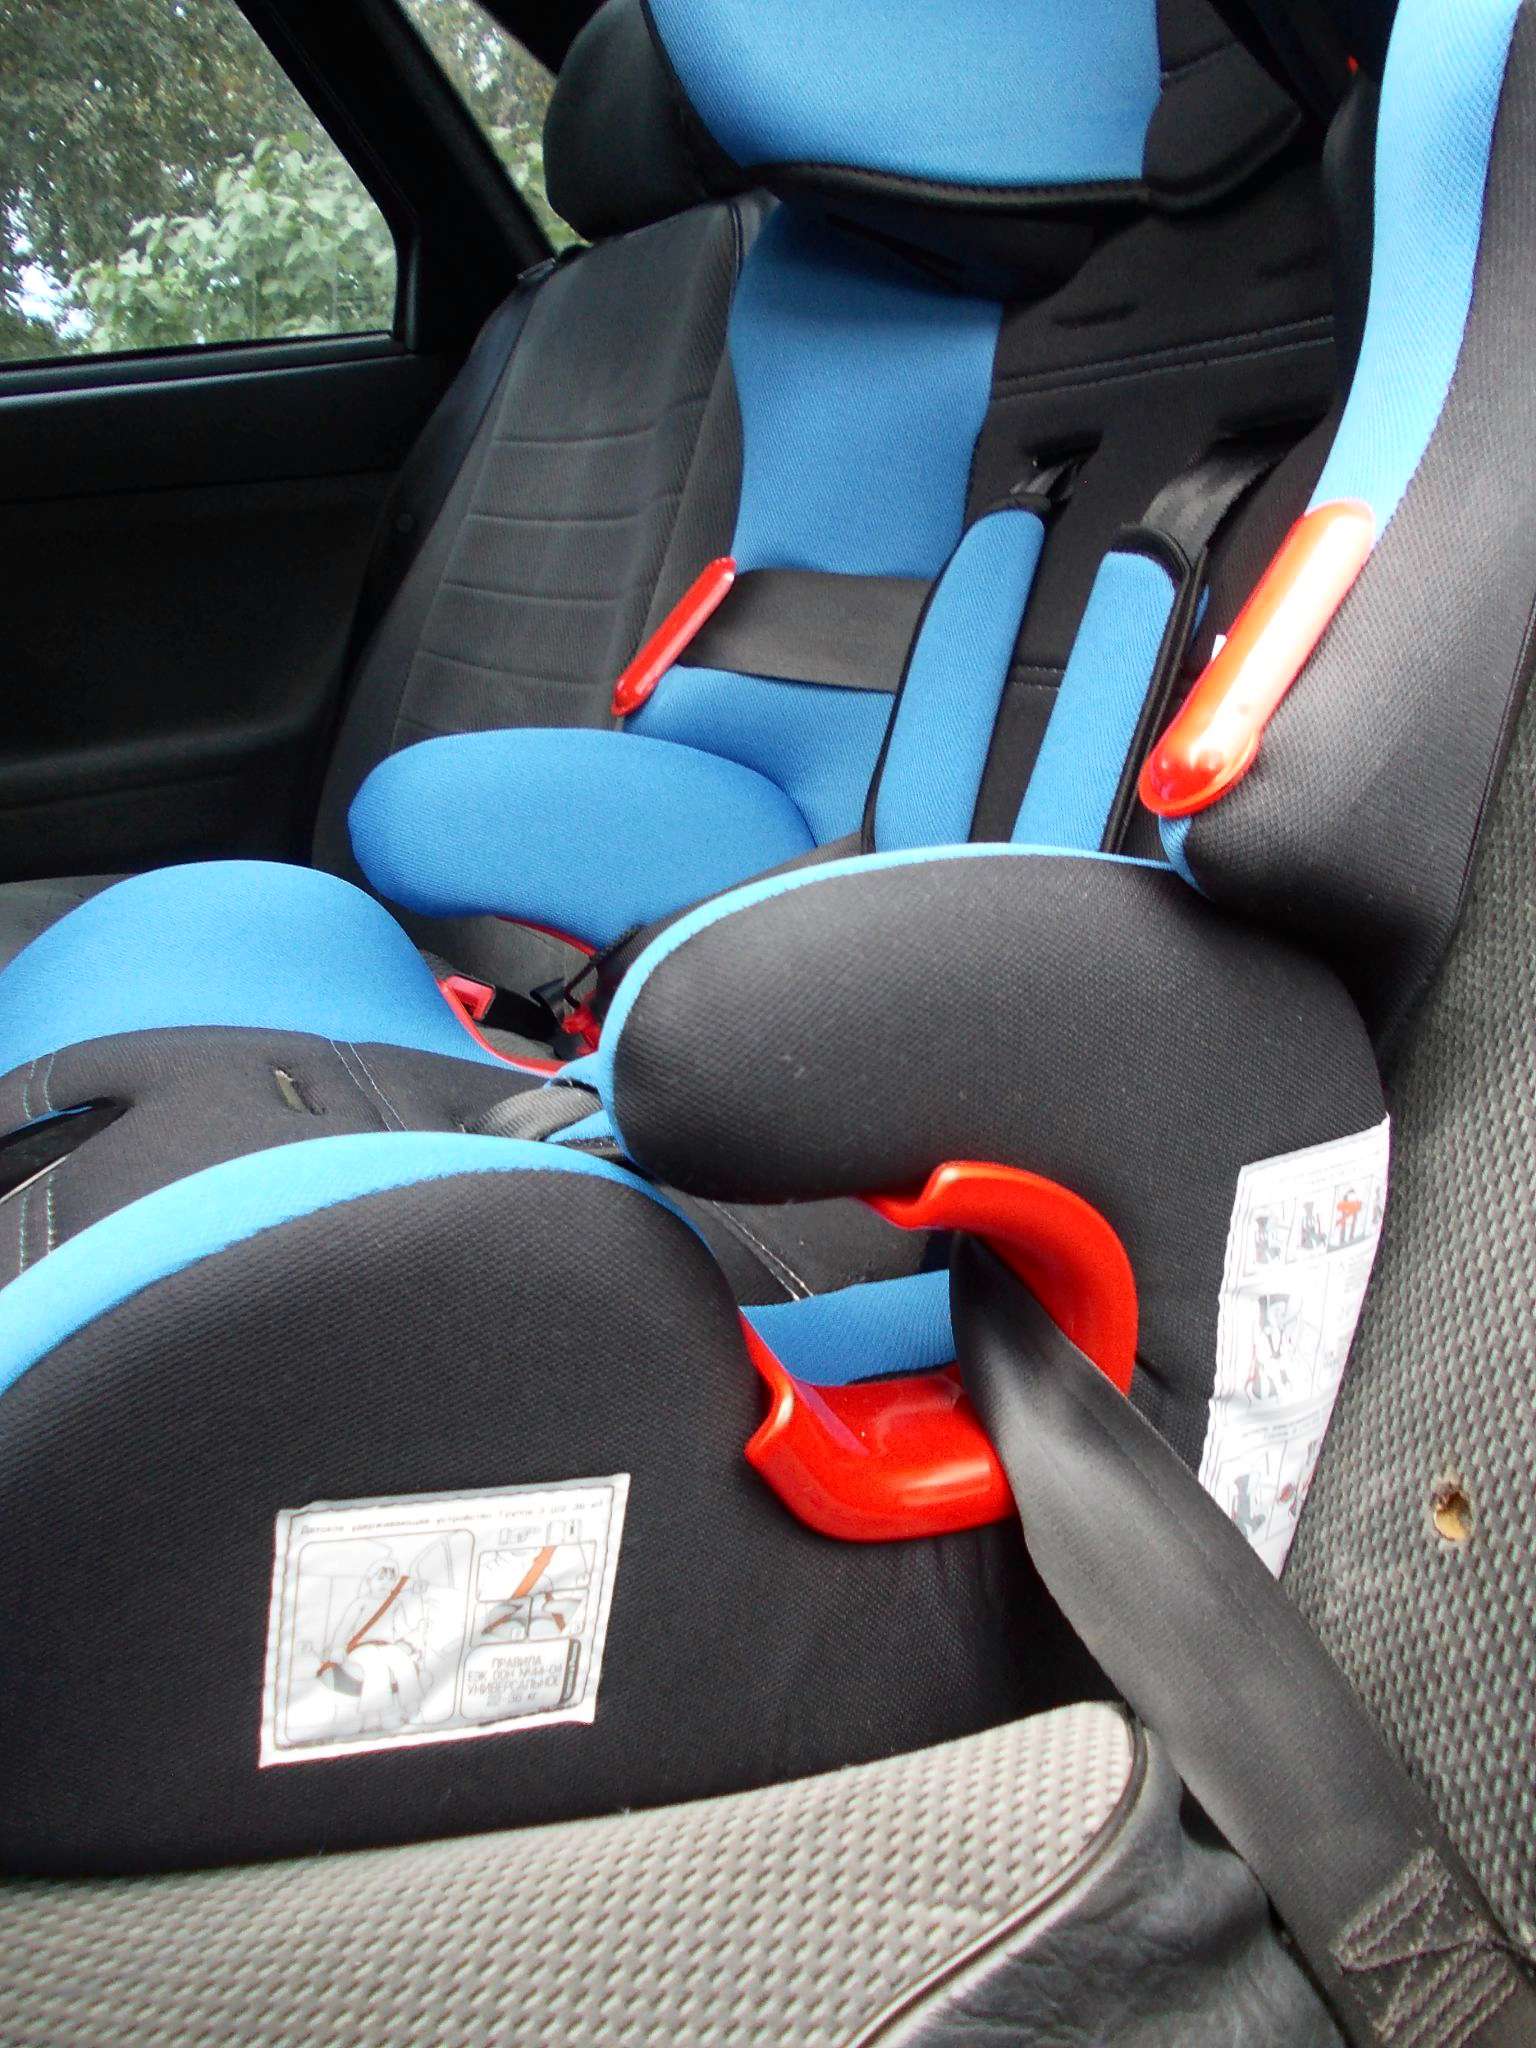 установка детских кресел в автомобиле на заднем сидении